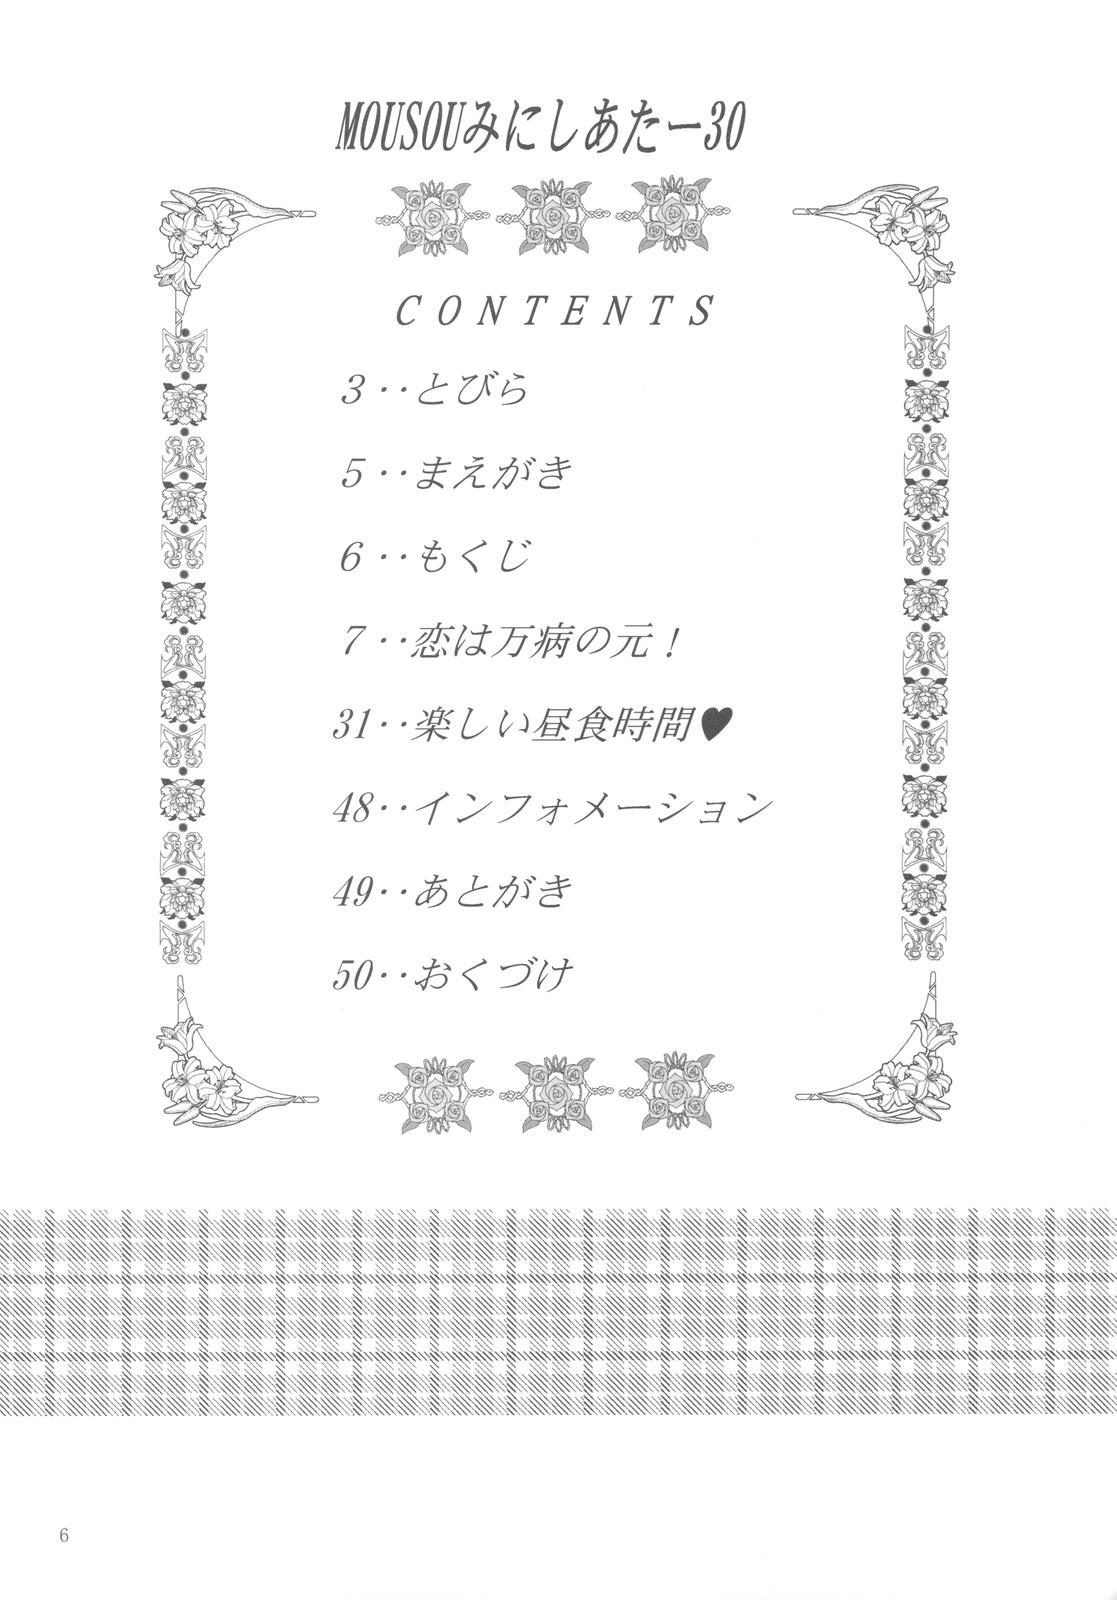 Online Mousou Mini Theater 30 - Boku wa tomodachi ga sukunai Periscope - Page 6